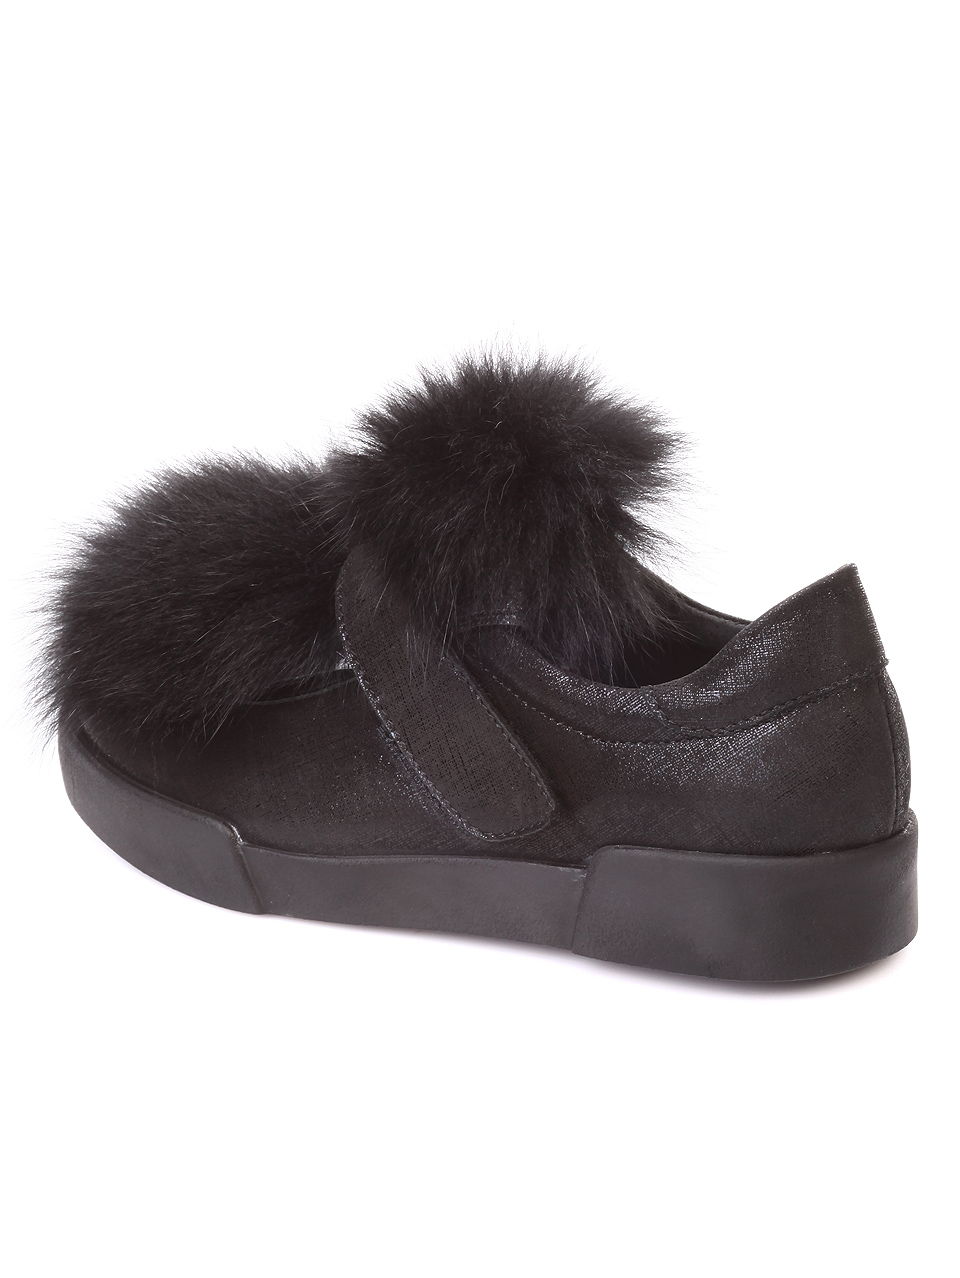 Дамски обувки от естествена кожа, с естествен косъм 3AB-181030 black